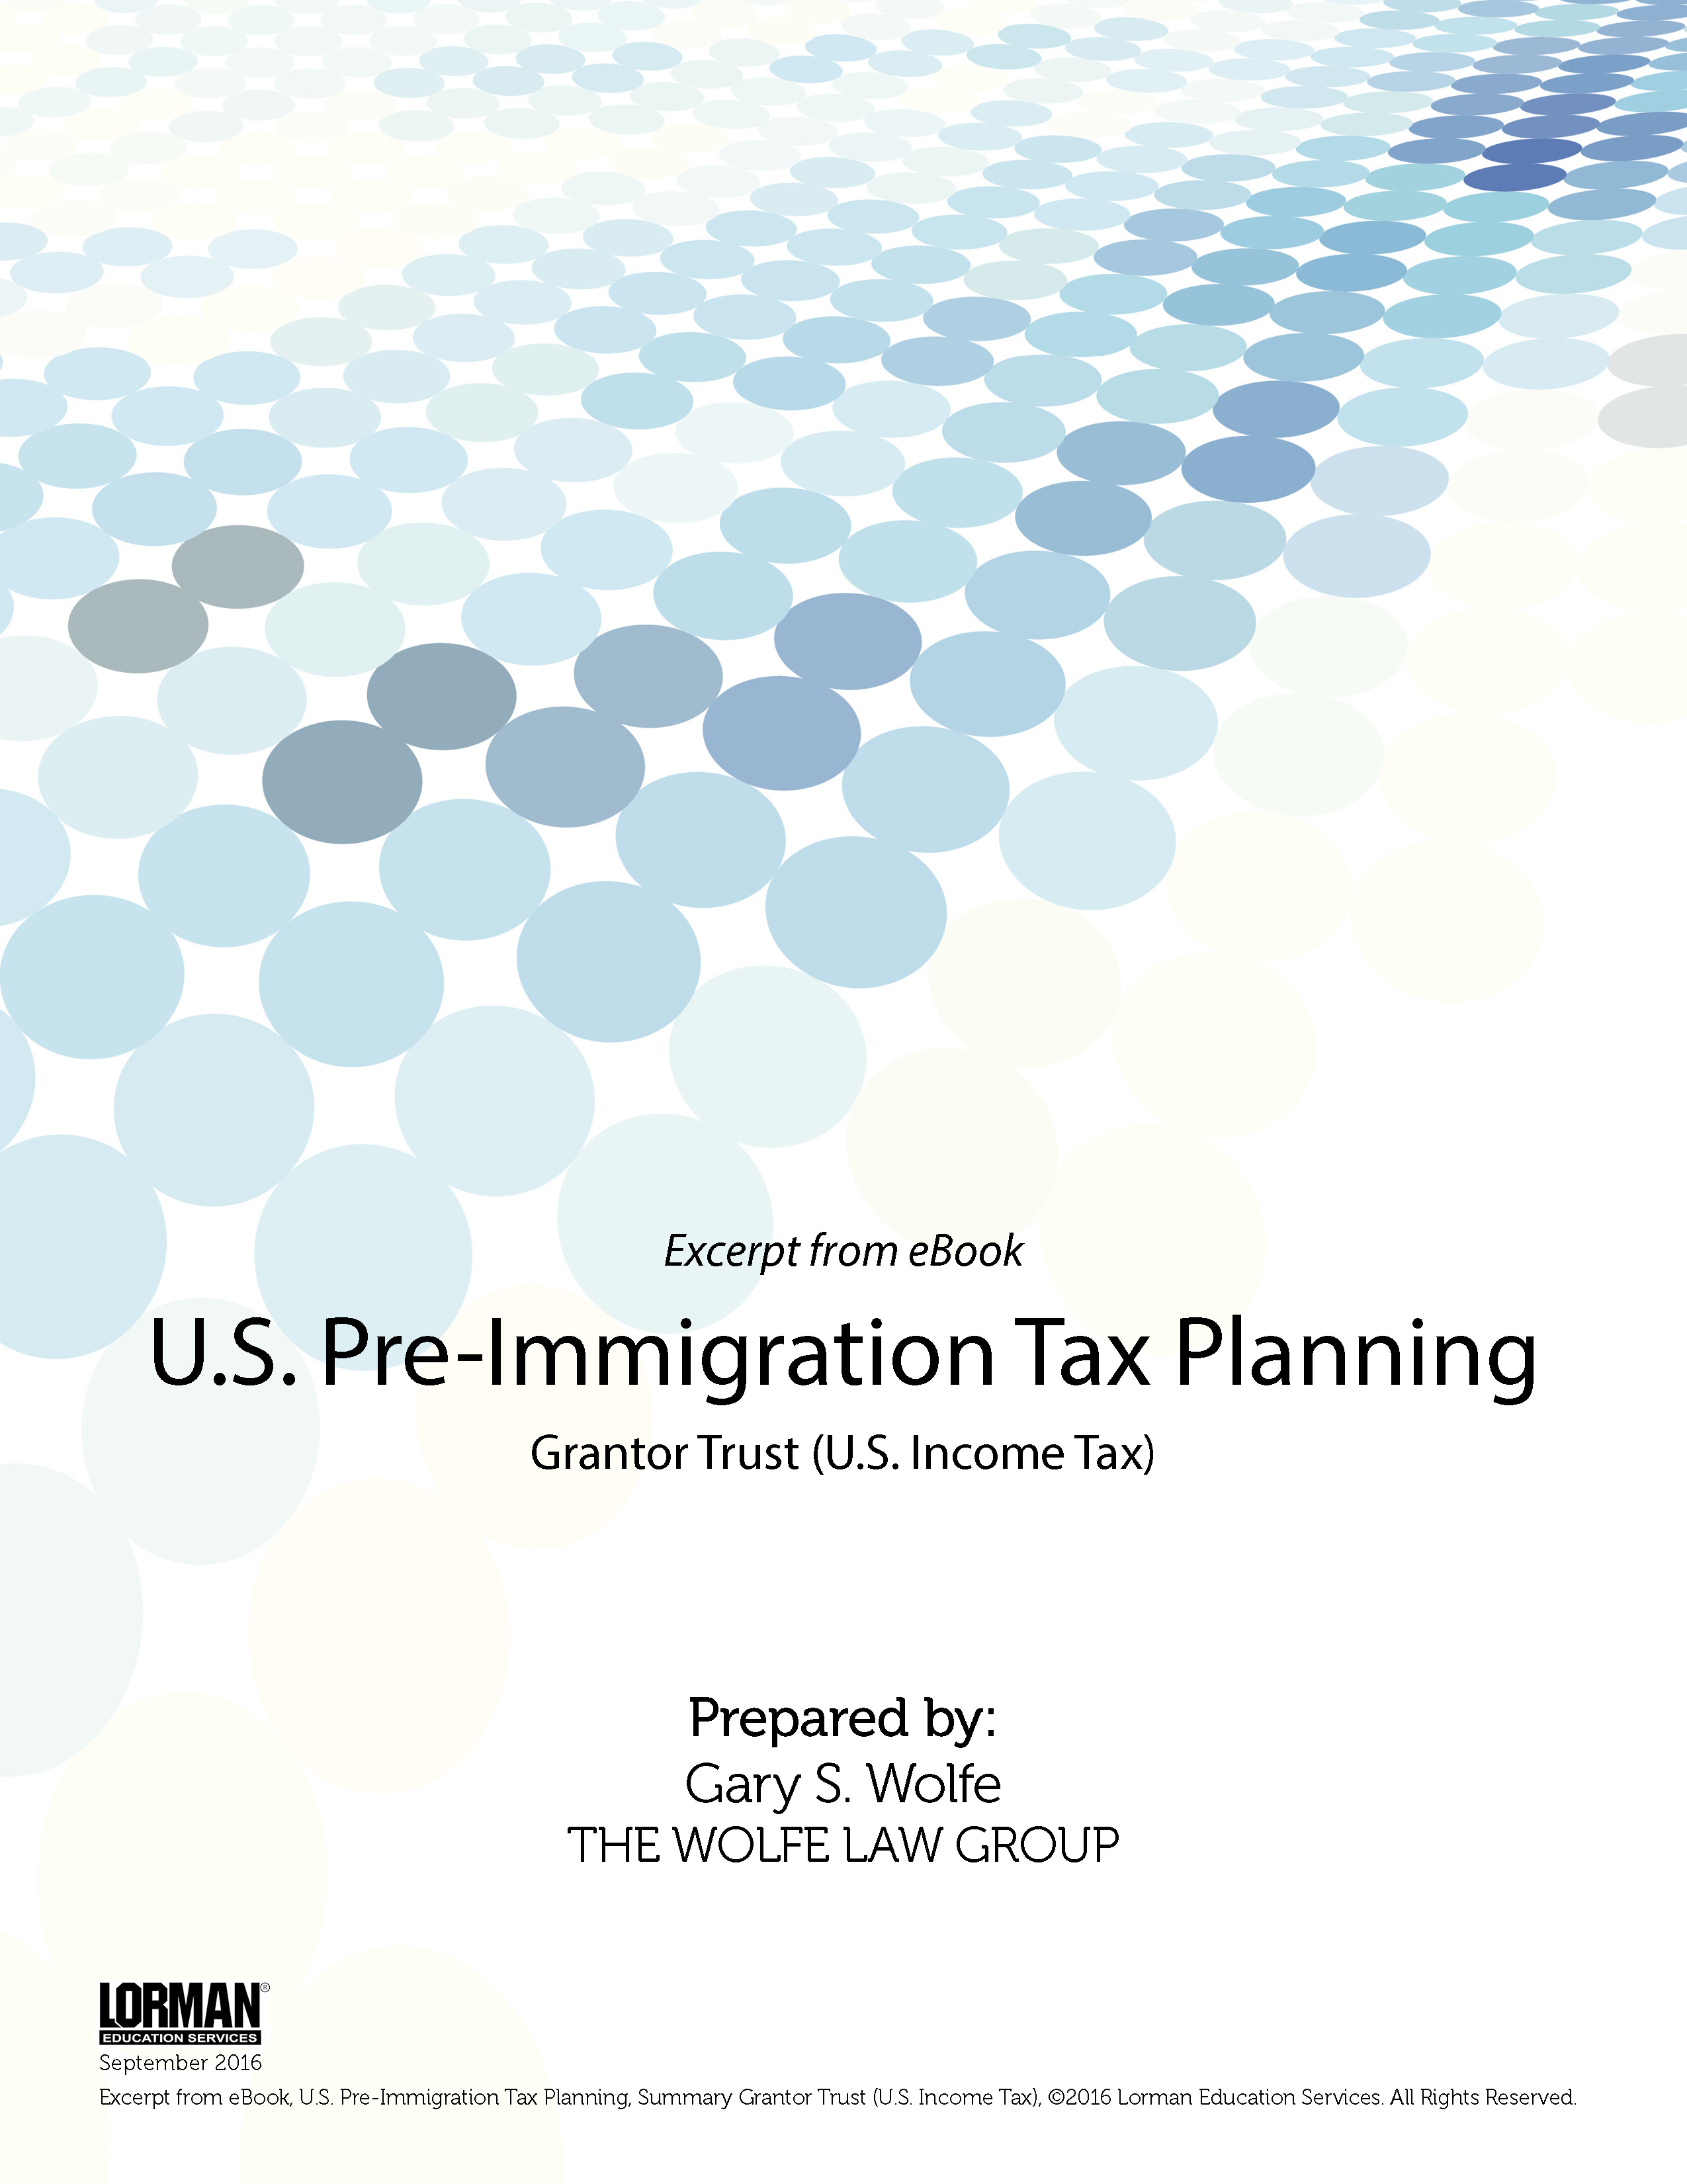 U.S. Pre-Immigration Tax Planning: Grantor Trust (U.S. Income Tax)